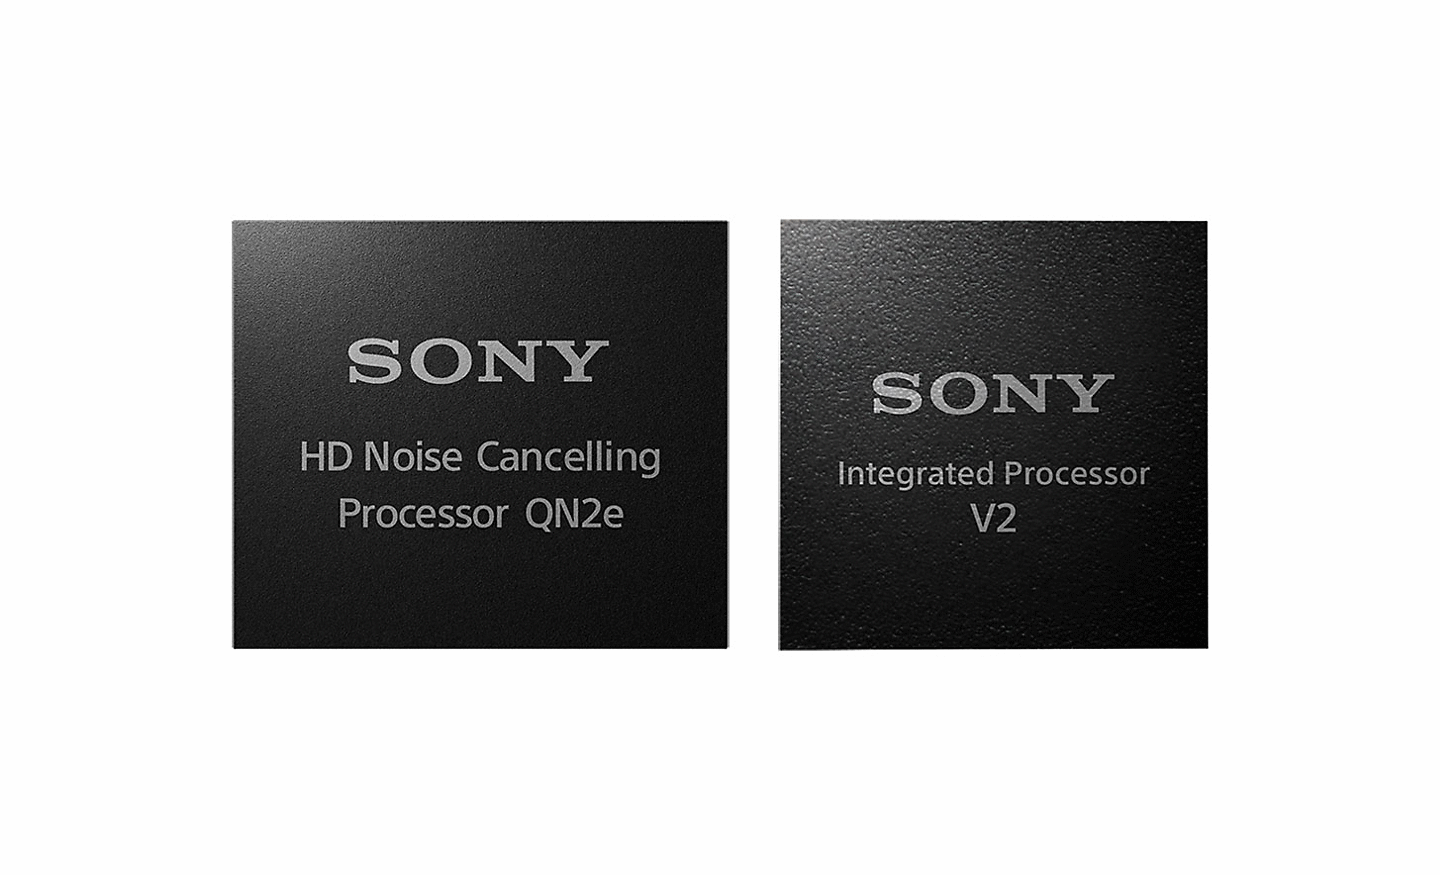 Bild von zwei Prozessoren, links ein HD-Prozessor für Noise Cancelling und rechts der integrierte V2-Prozessor